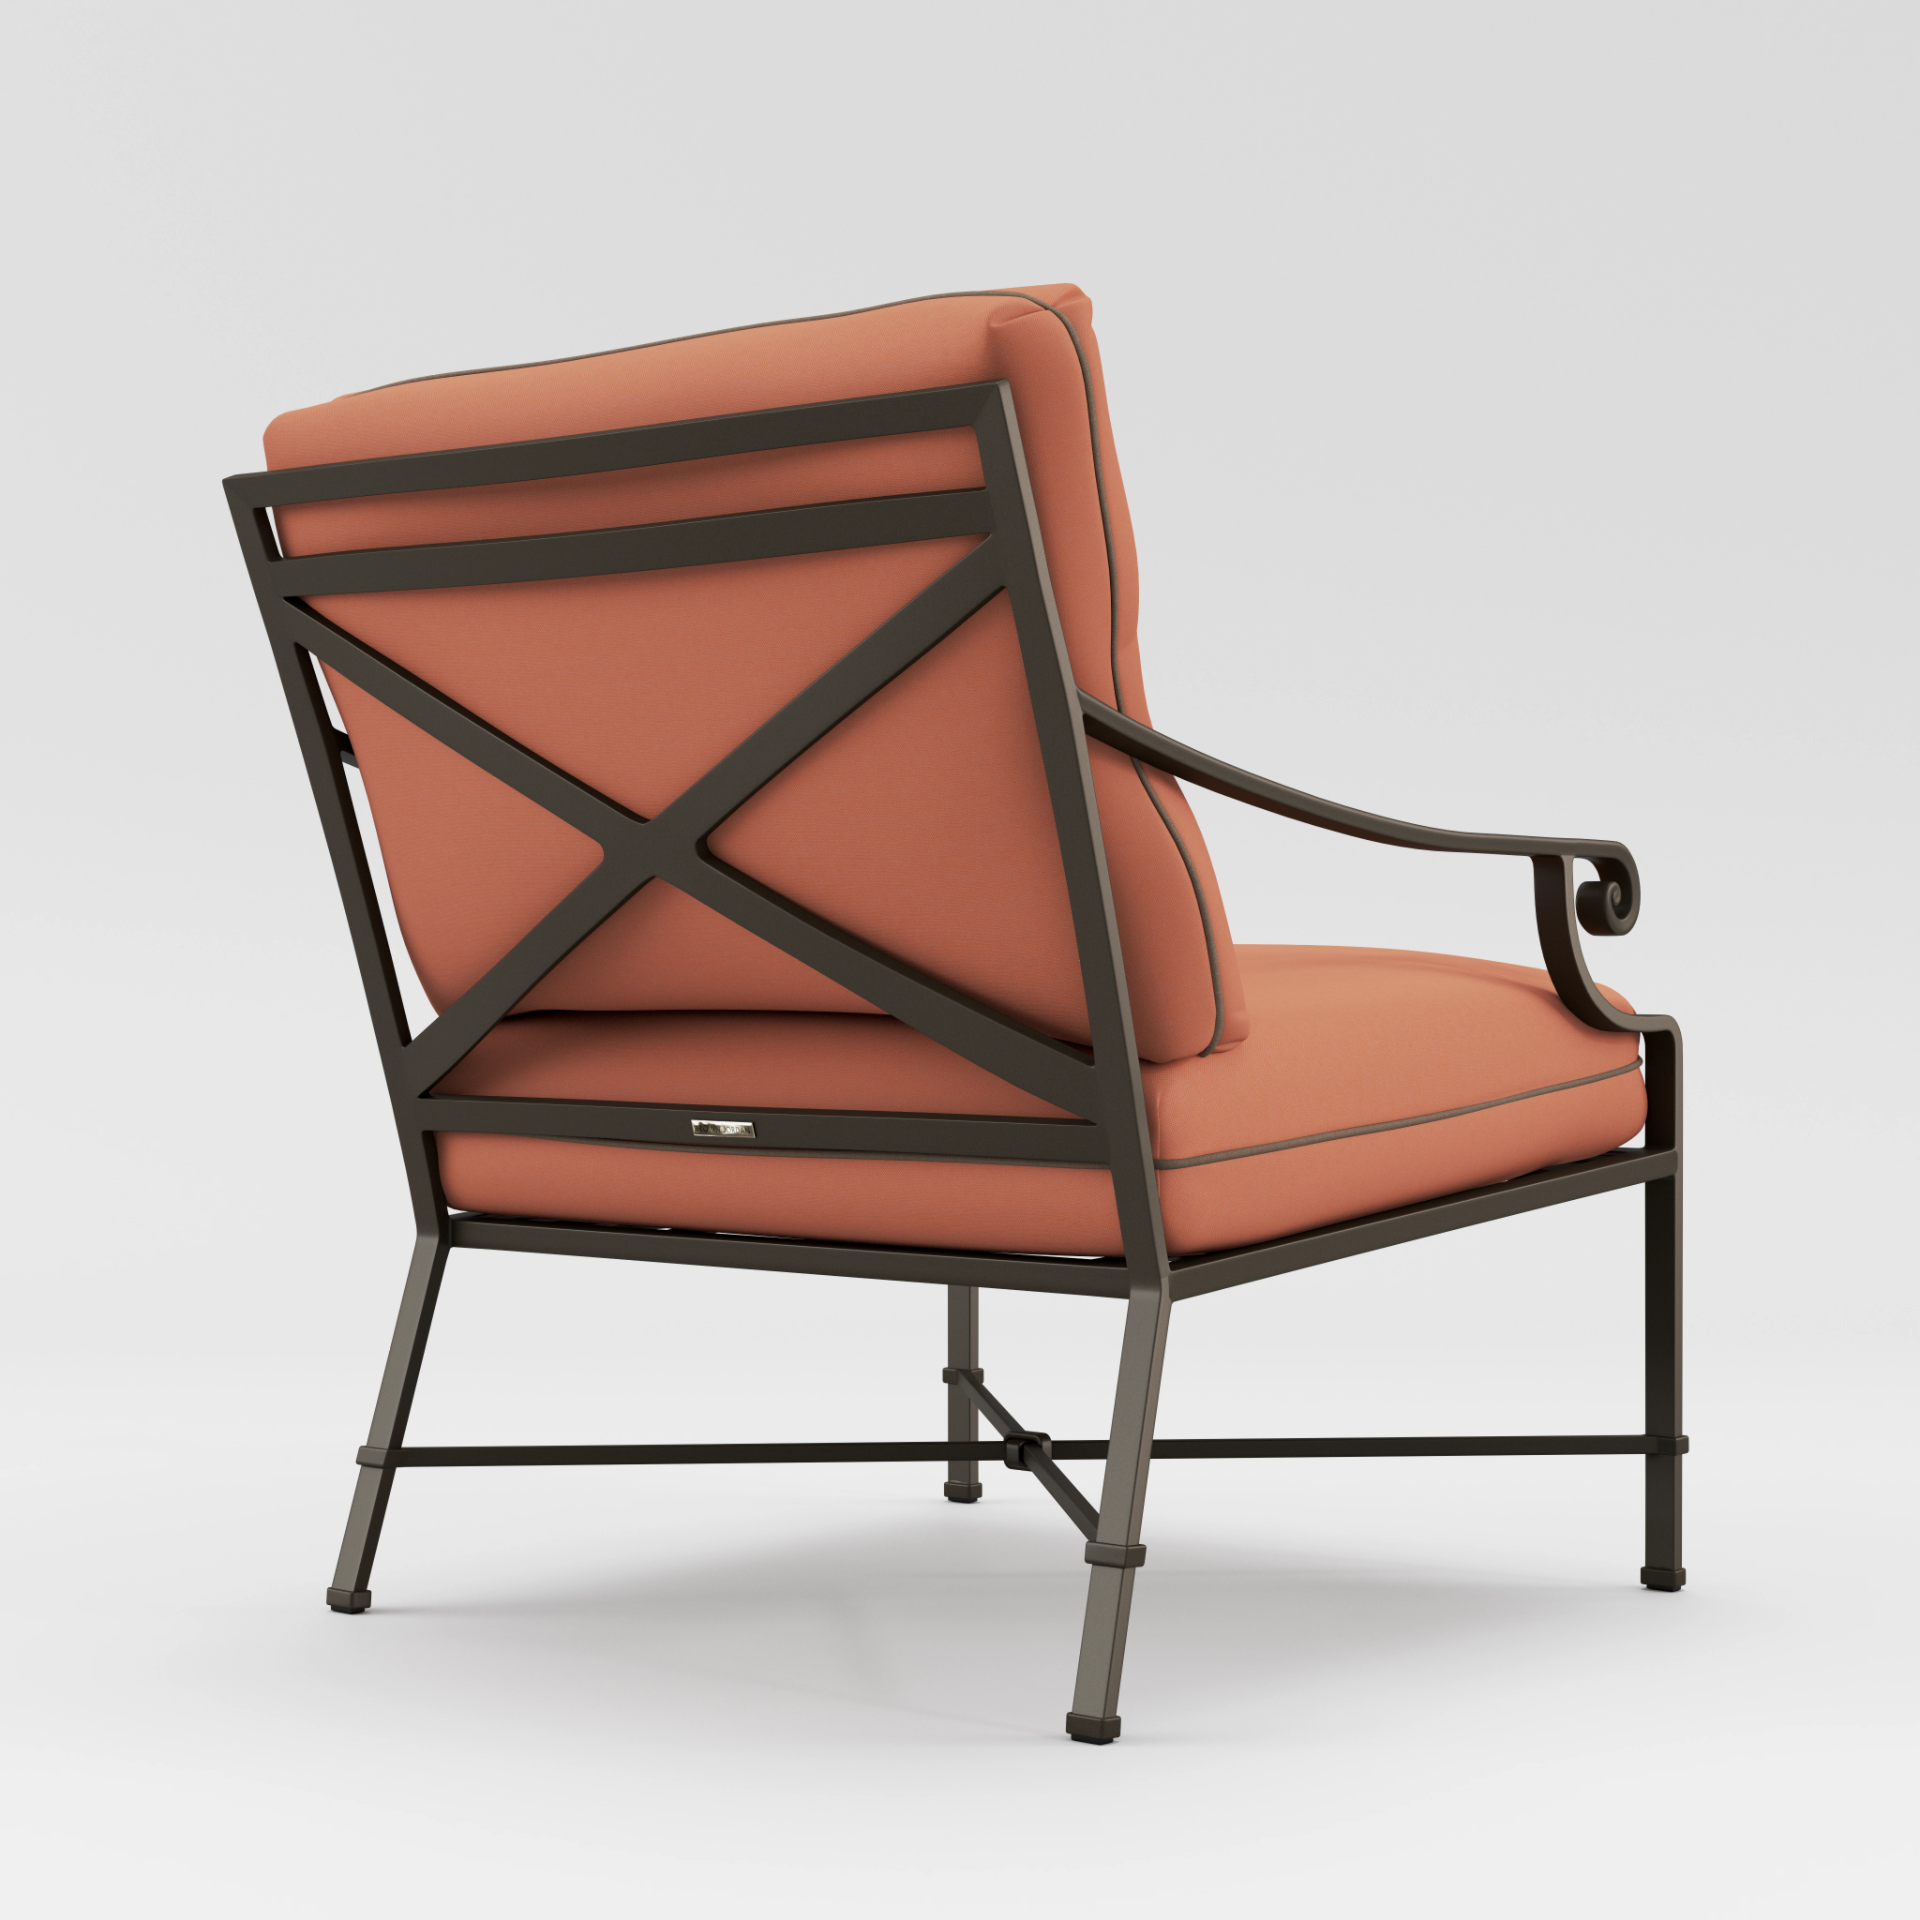 Venetian Lounge Chair by Brown Jordan